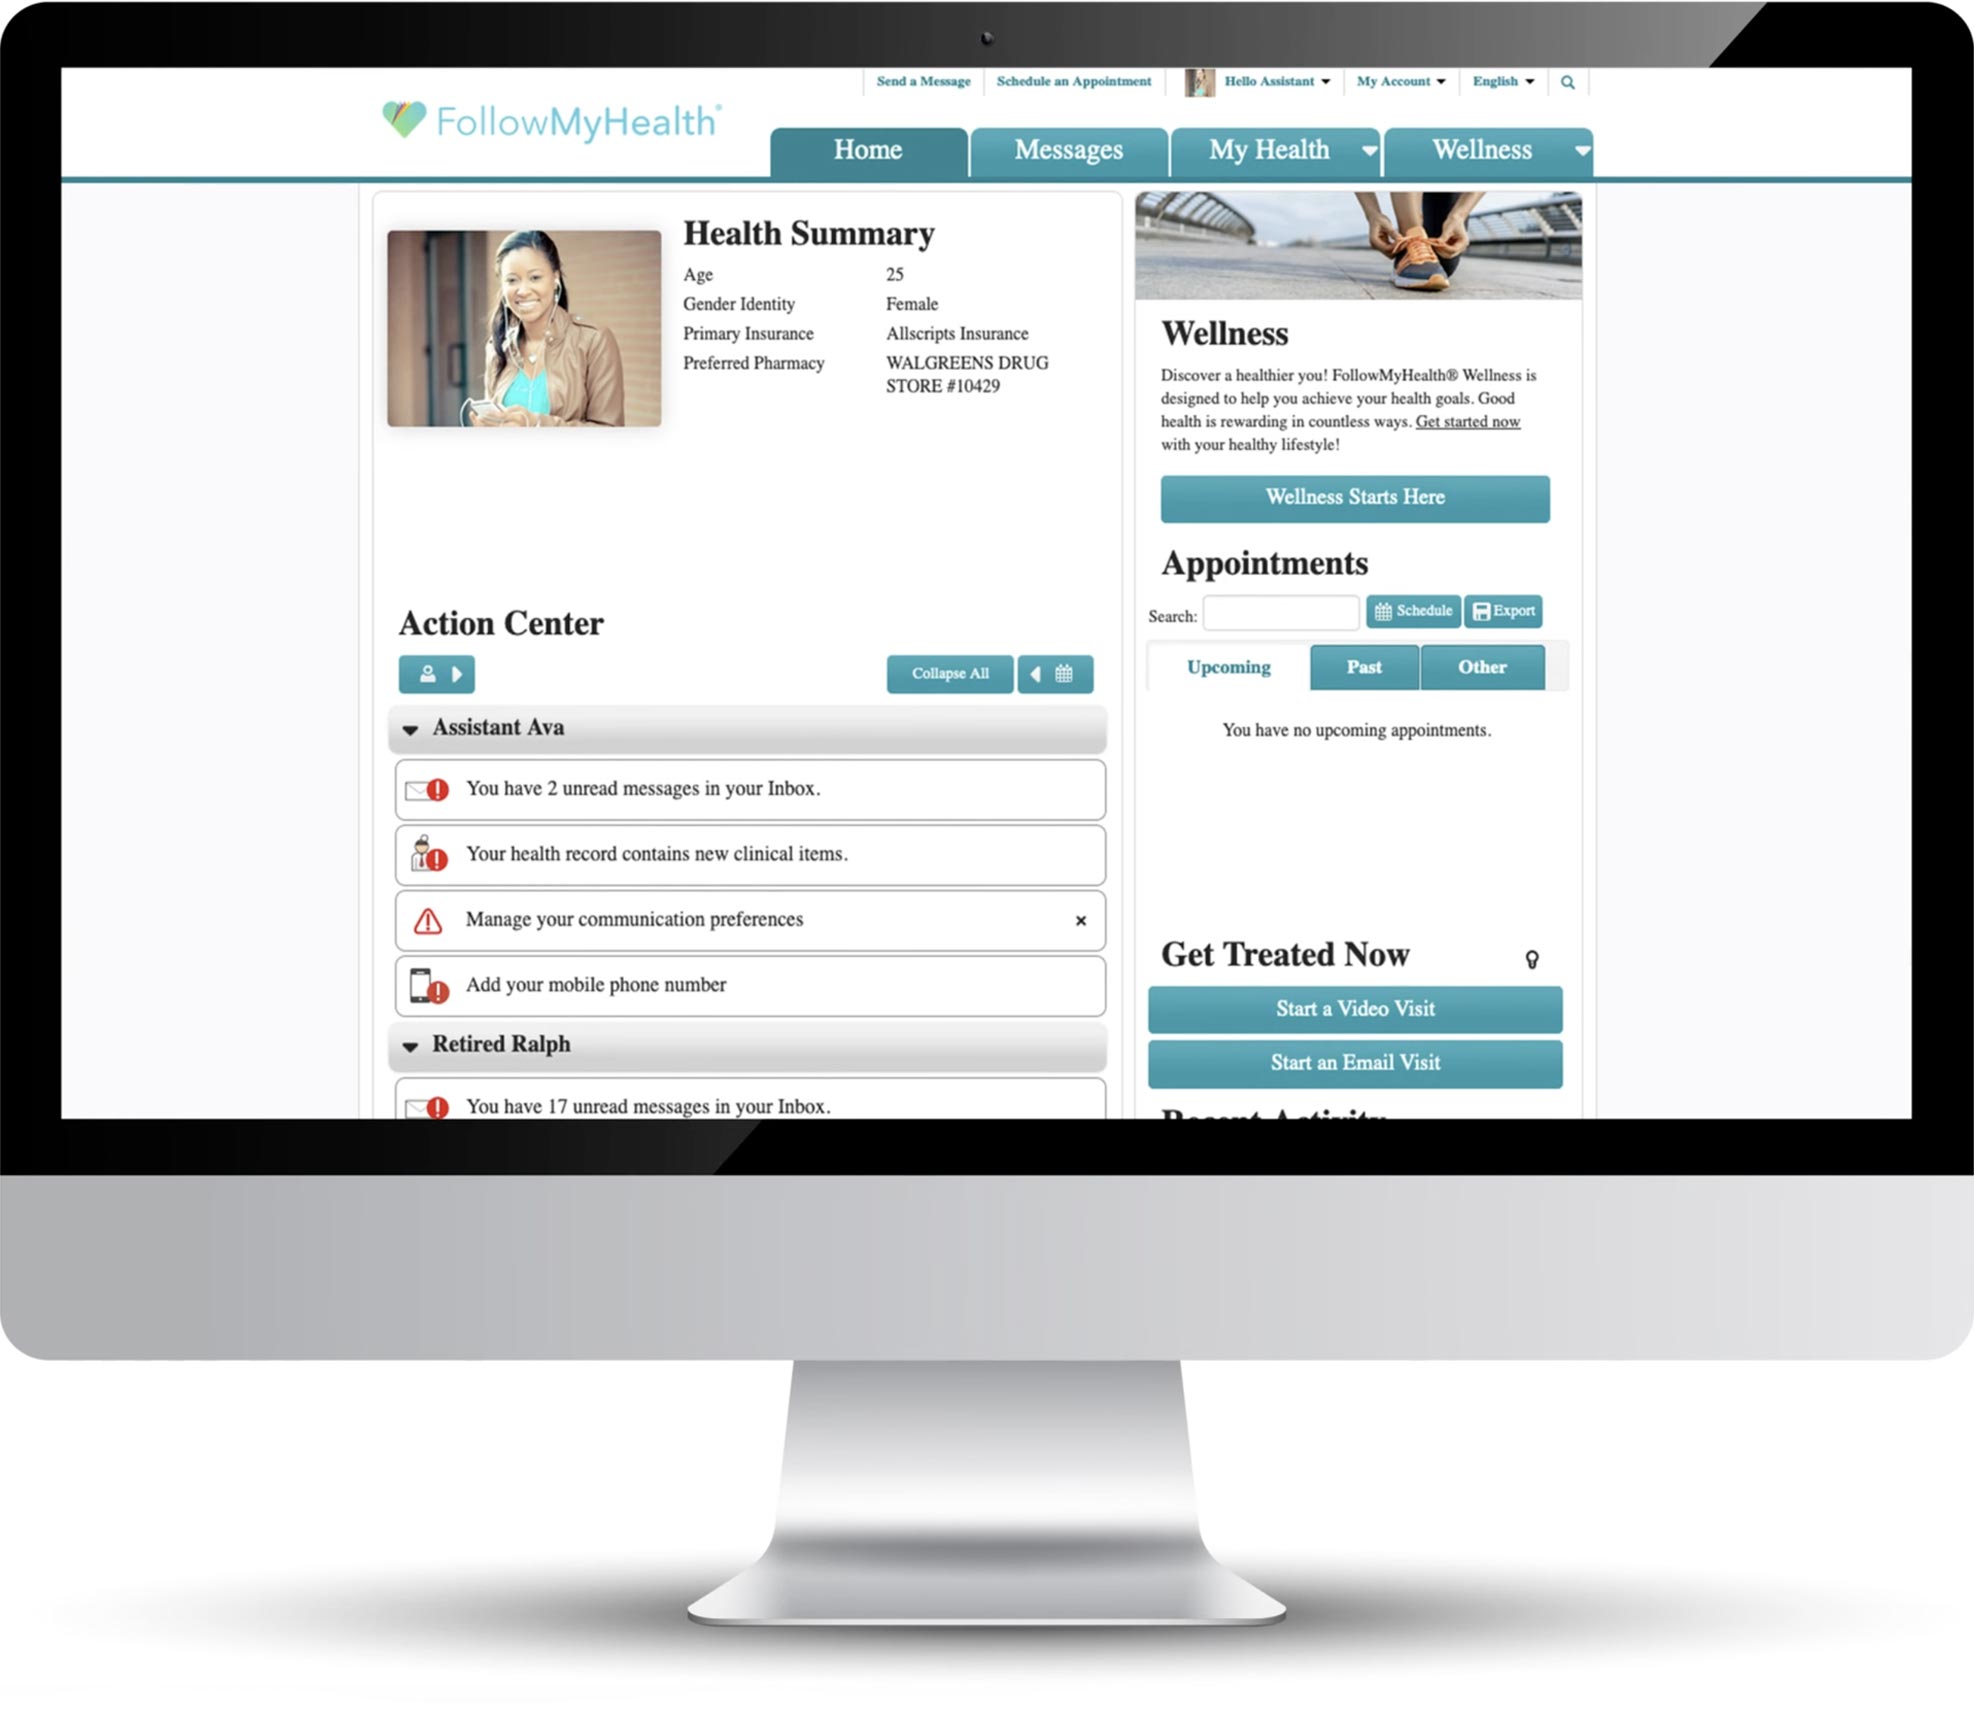 FMH Patient Portal on desktop computer